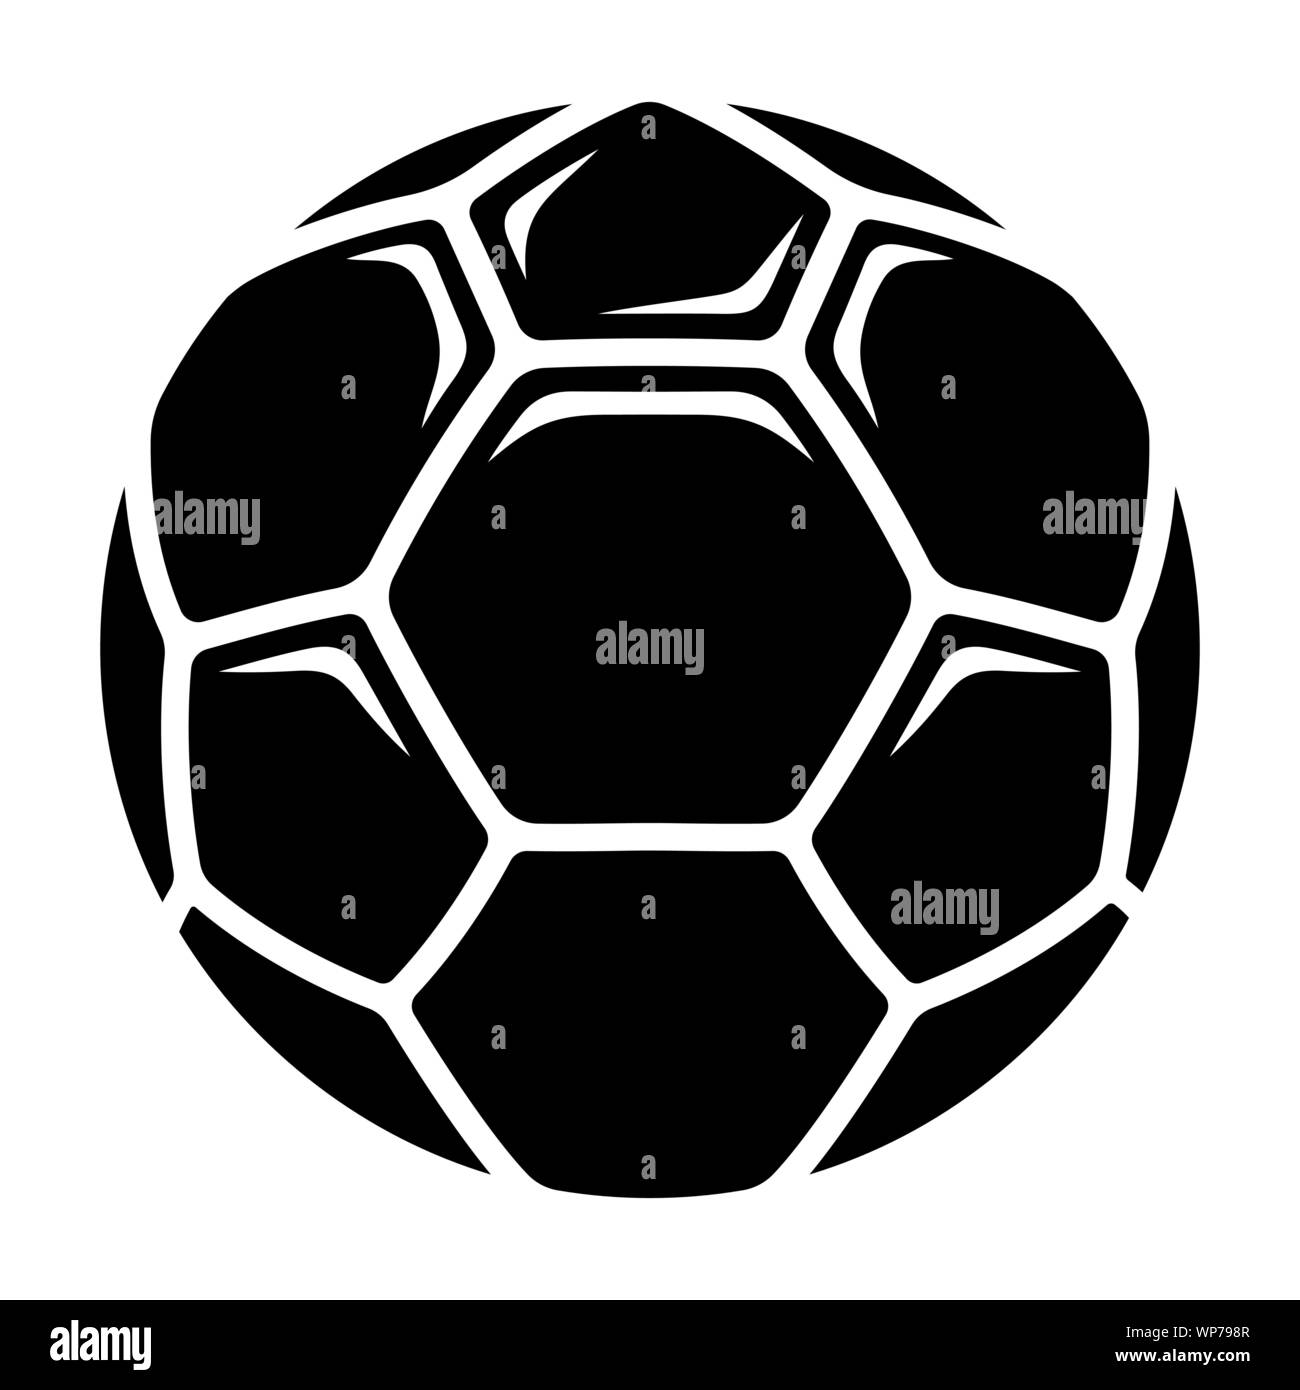 Icono de balones de fútbol. Balón de fútbol europeo. En blanco y negro ilustración vectorial Ilustración del Vector